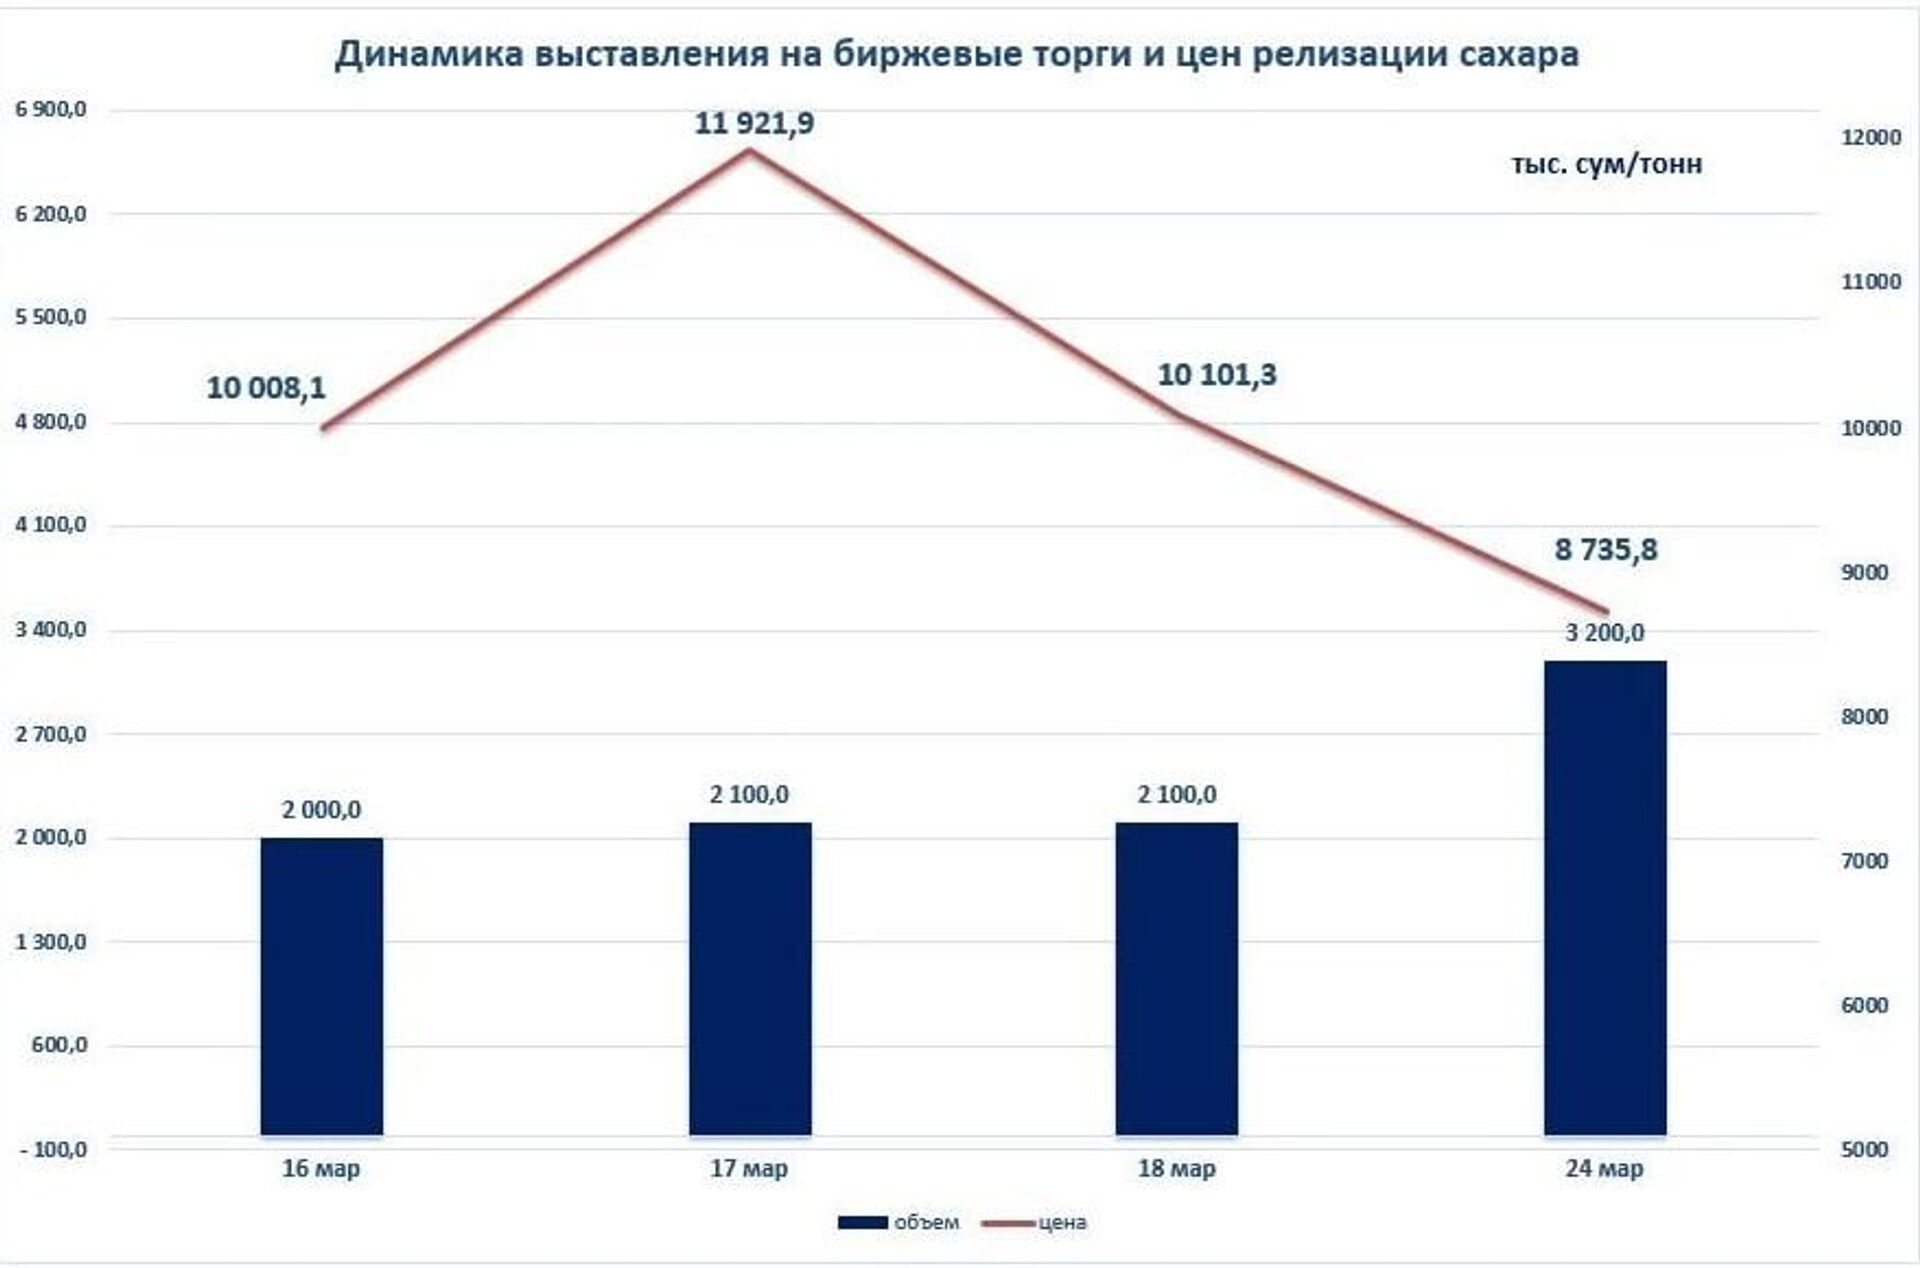 Стоимость сахара на биржевых торгах упала на 14 процентов до 8,7 тысячи сумов за 1 килограмм - Sputnik Узбекистан, 1920, 24.03.2022